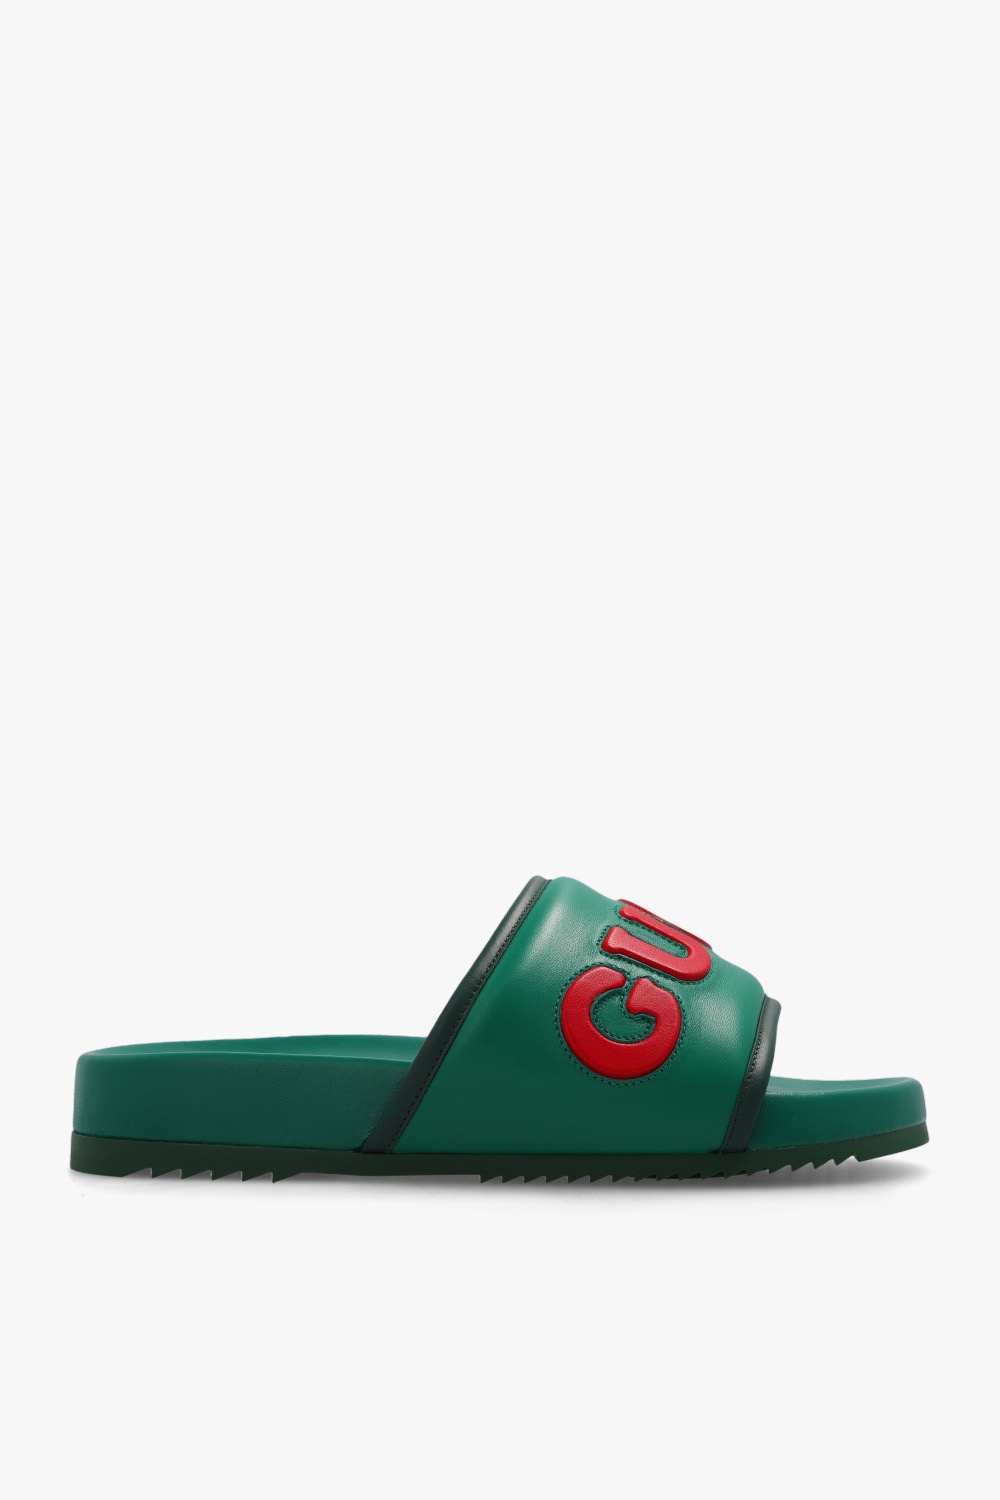 Gucci Slides Shoes